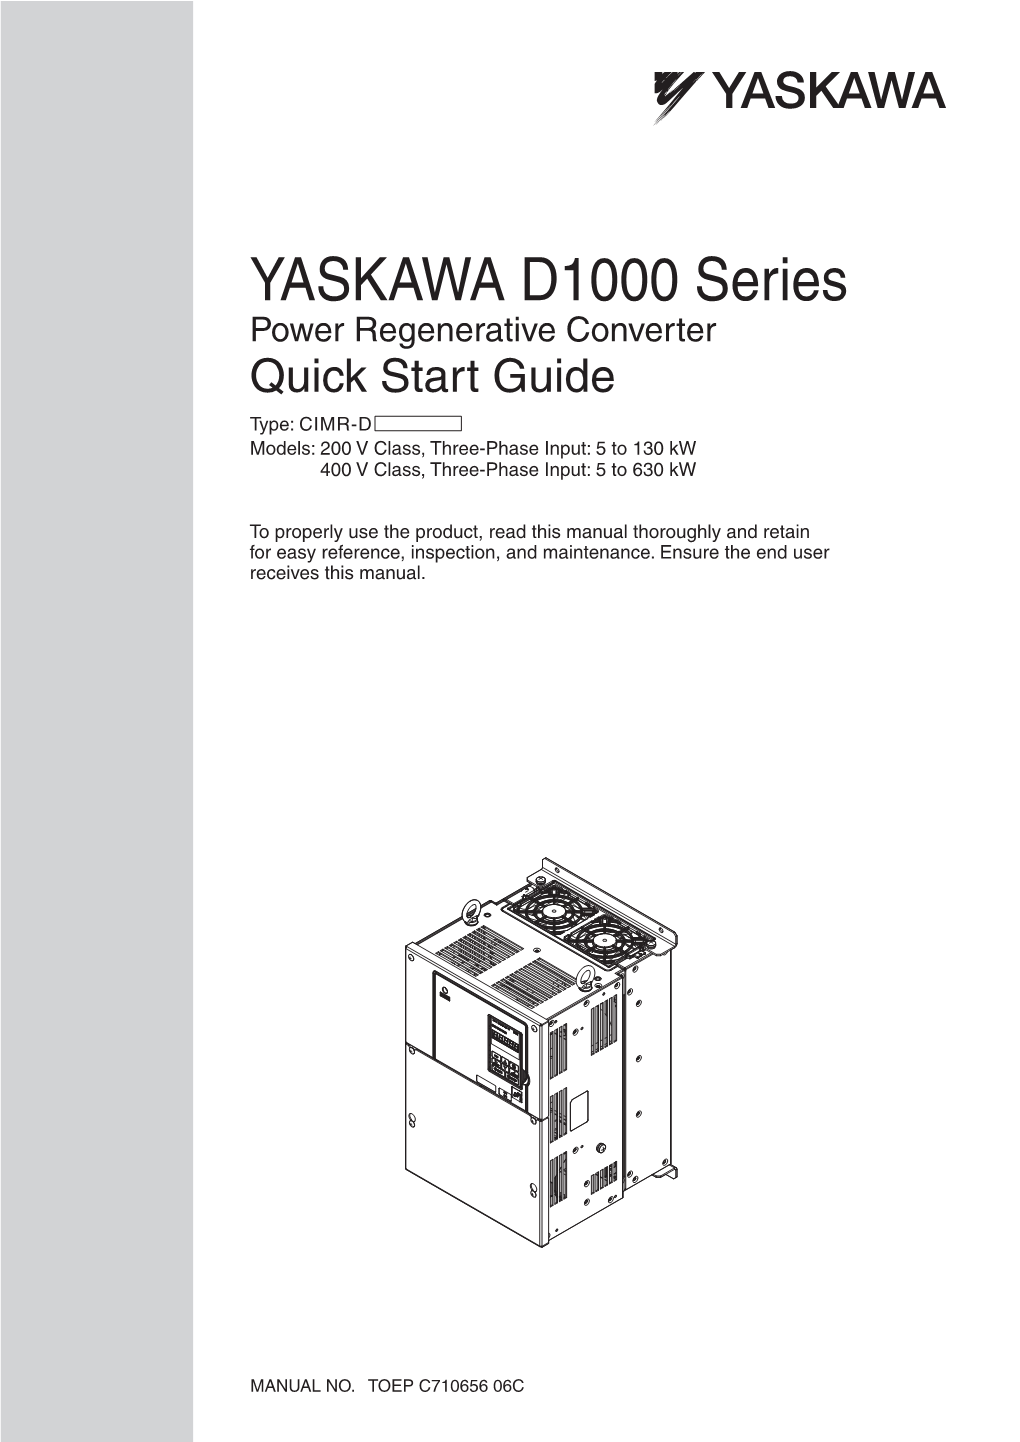 YASKAWA D1000 Series